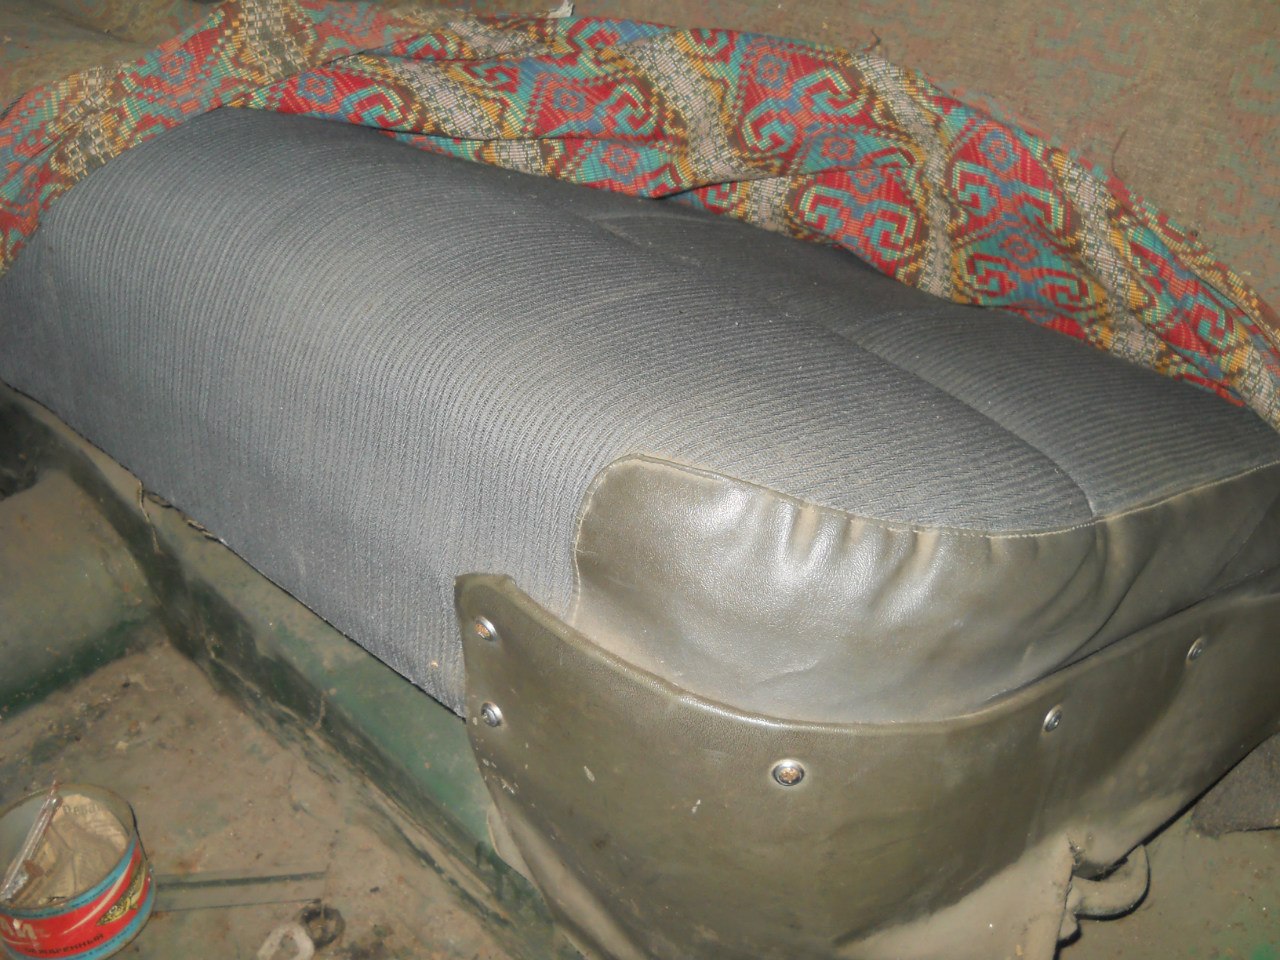 Заплатка на диван из ткани